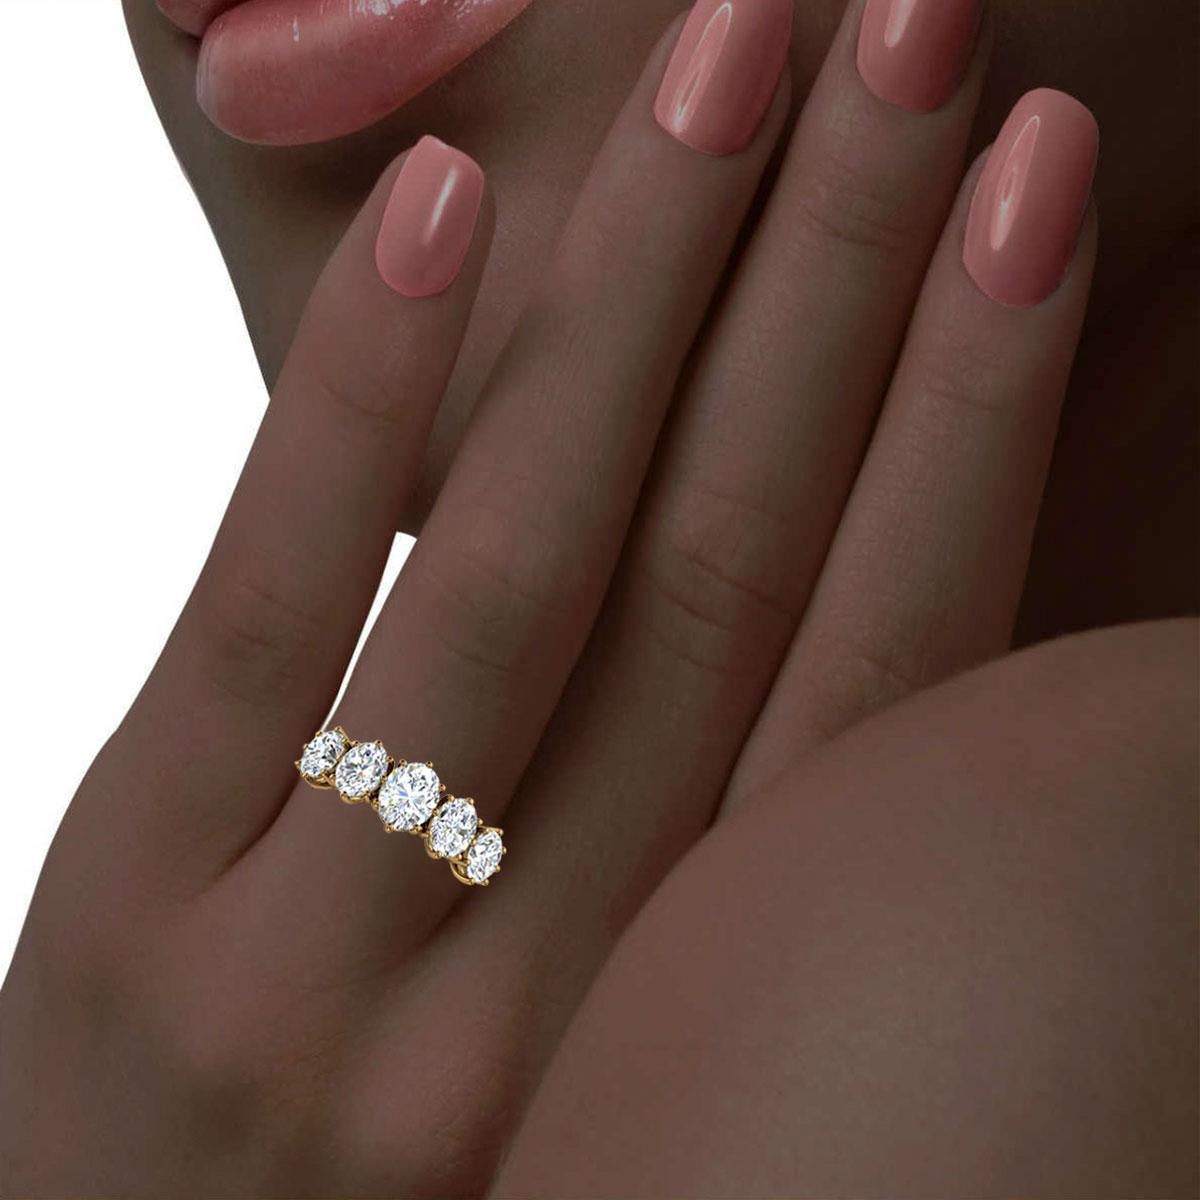 1/2 carat oval diamond ring